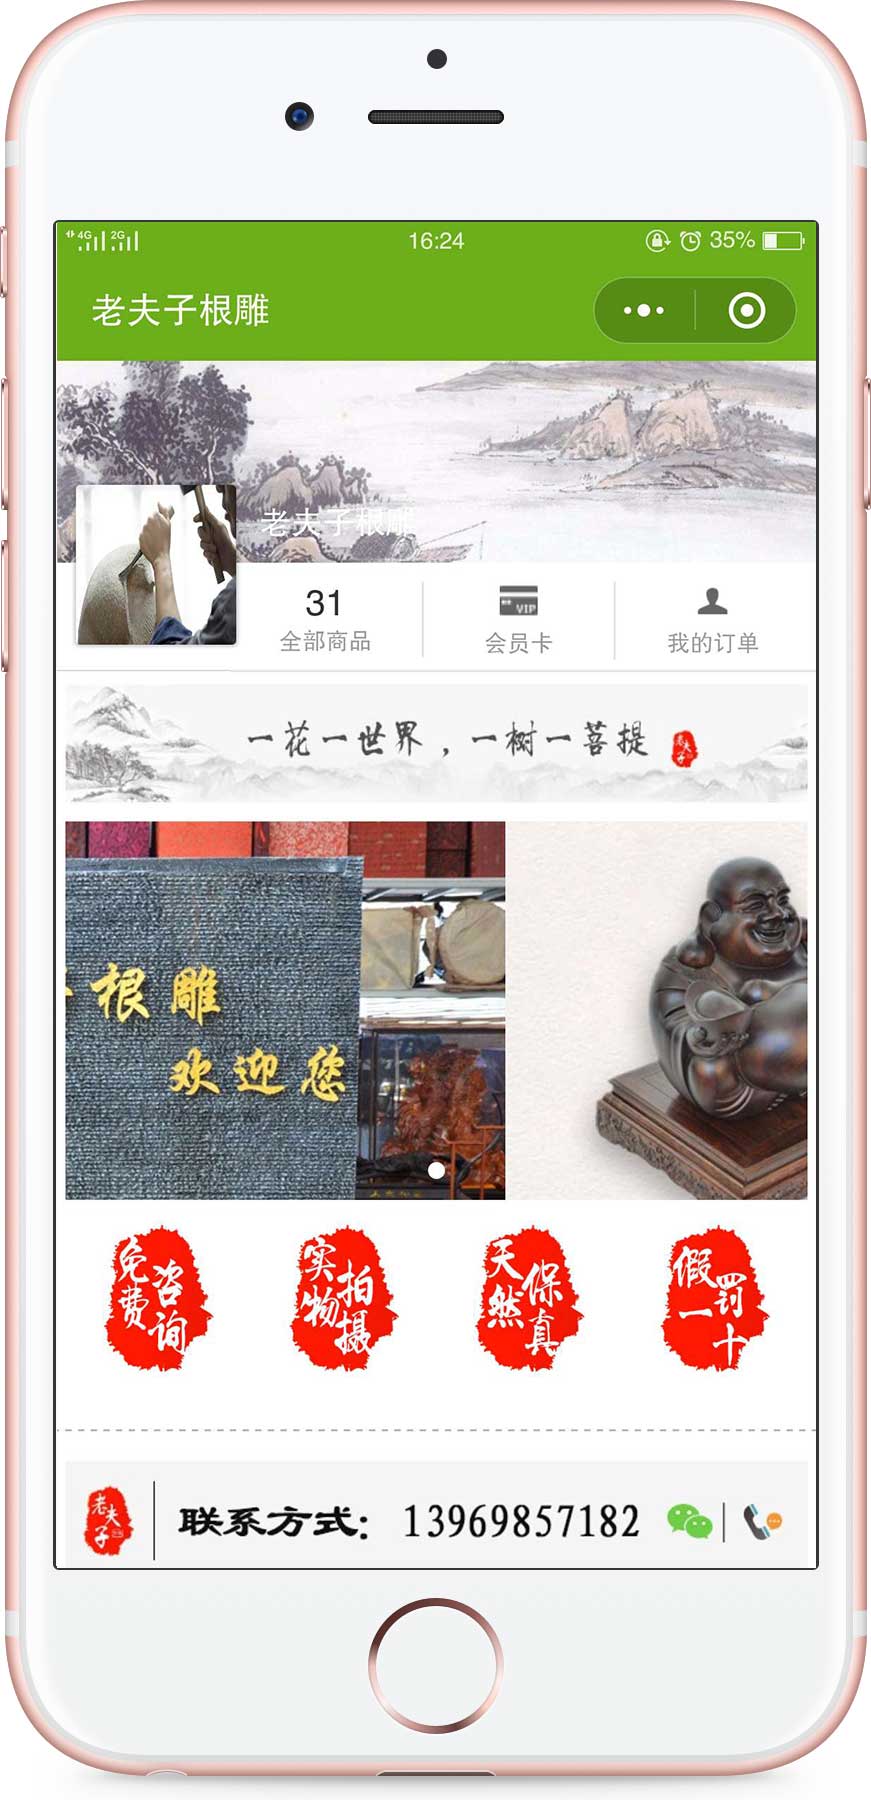 上海老夫子根雕木雕红木家居批发零售公司